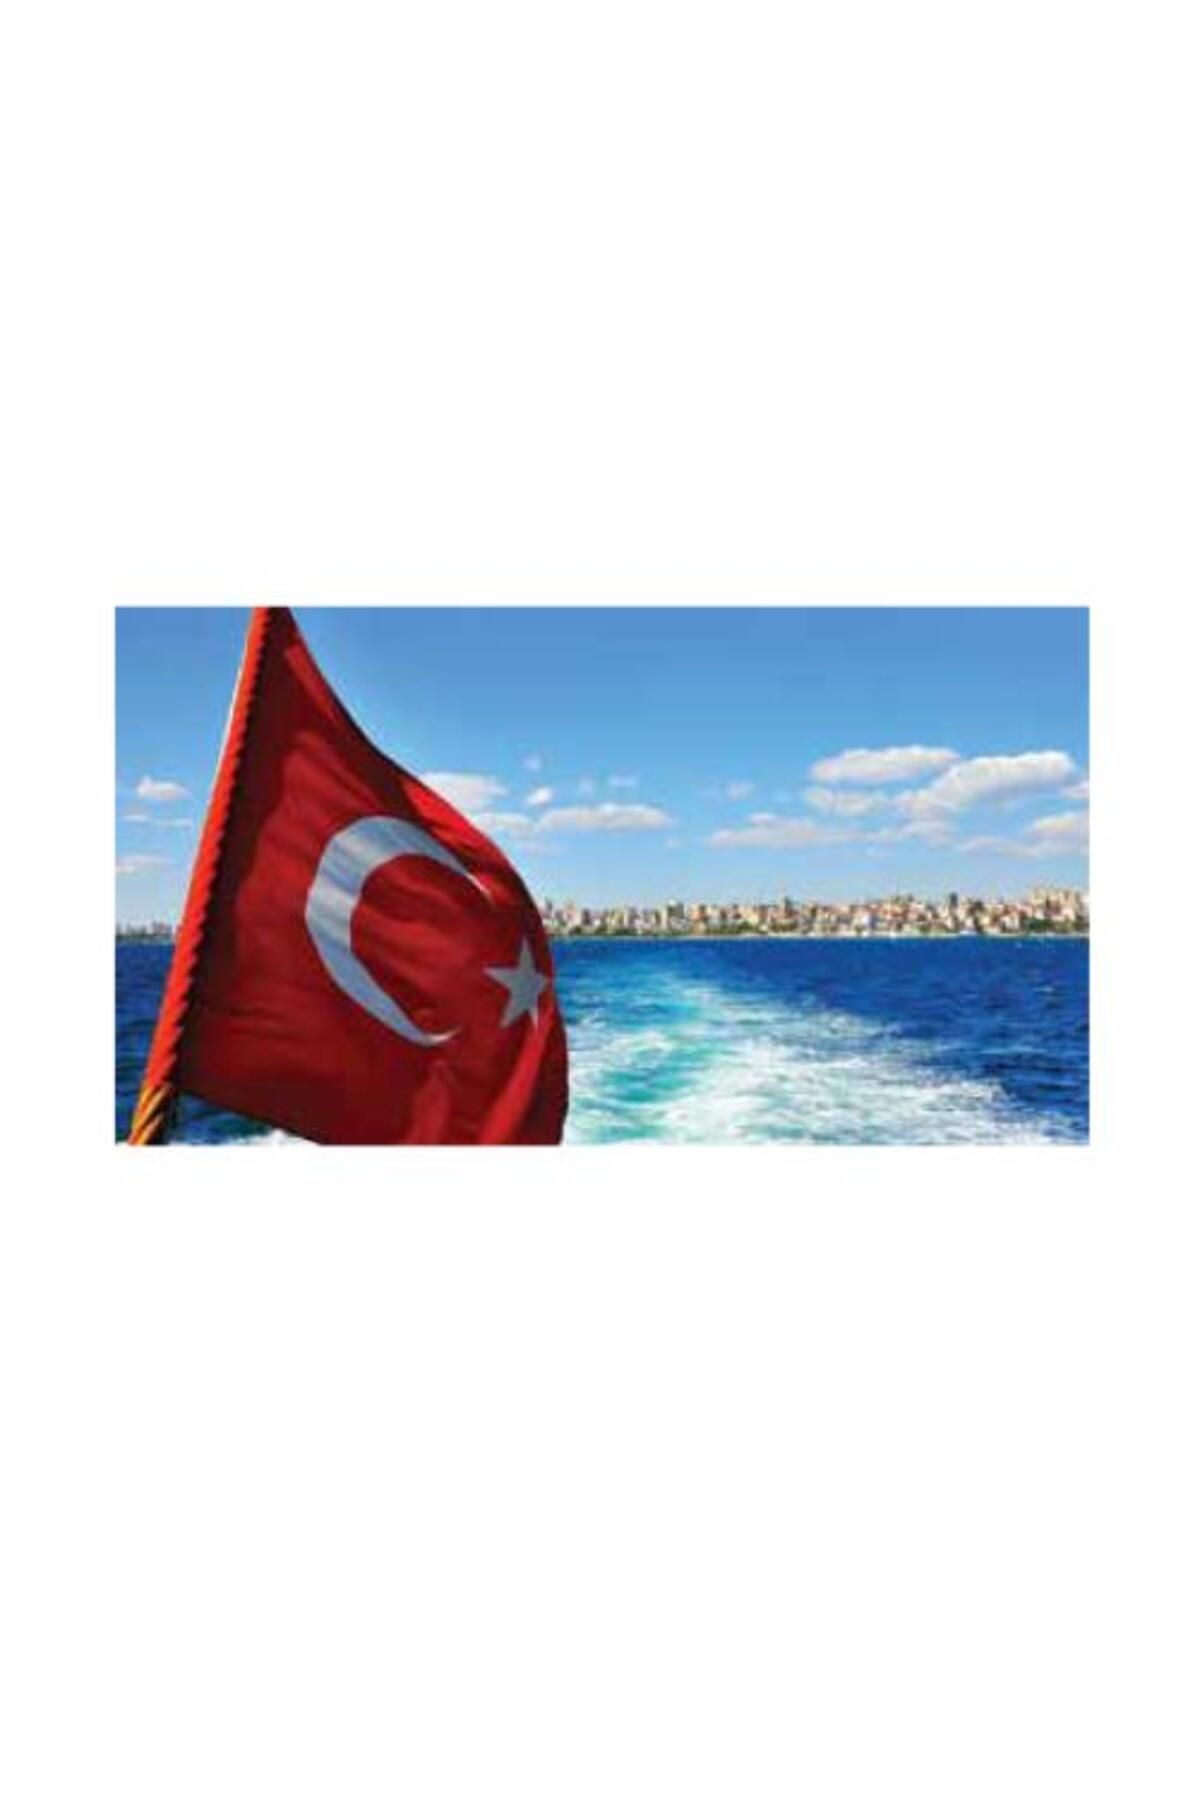 KALE Türk Bayrağı 20x30cm